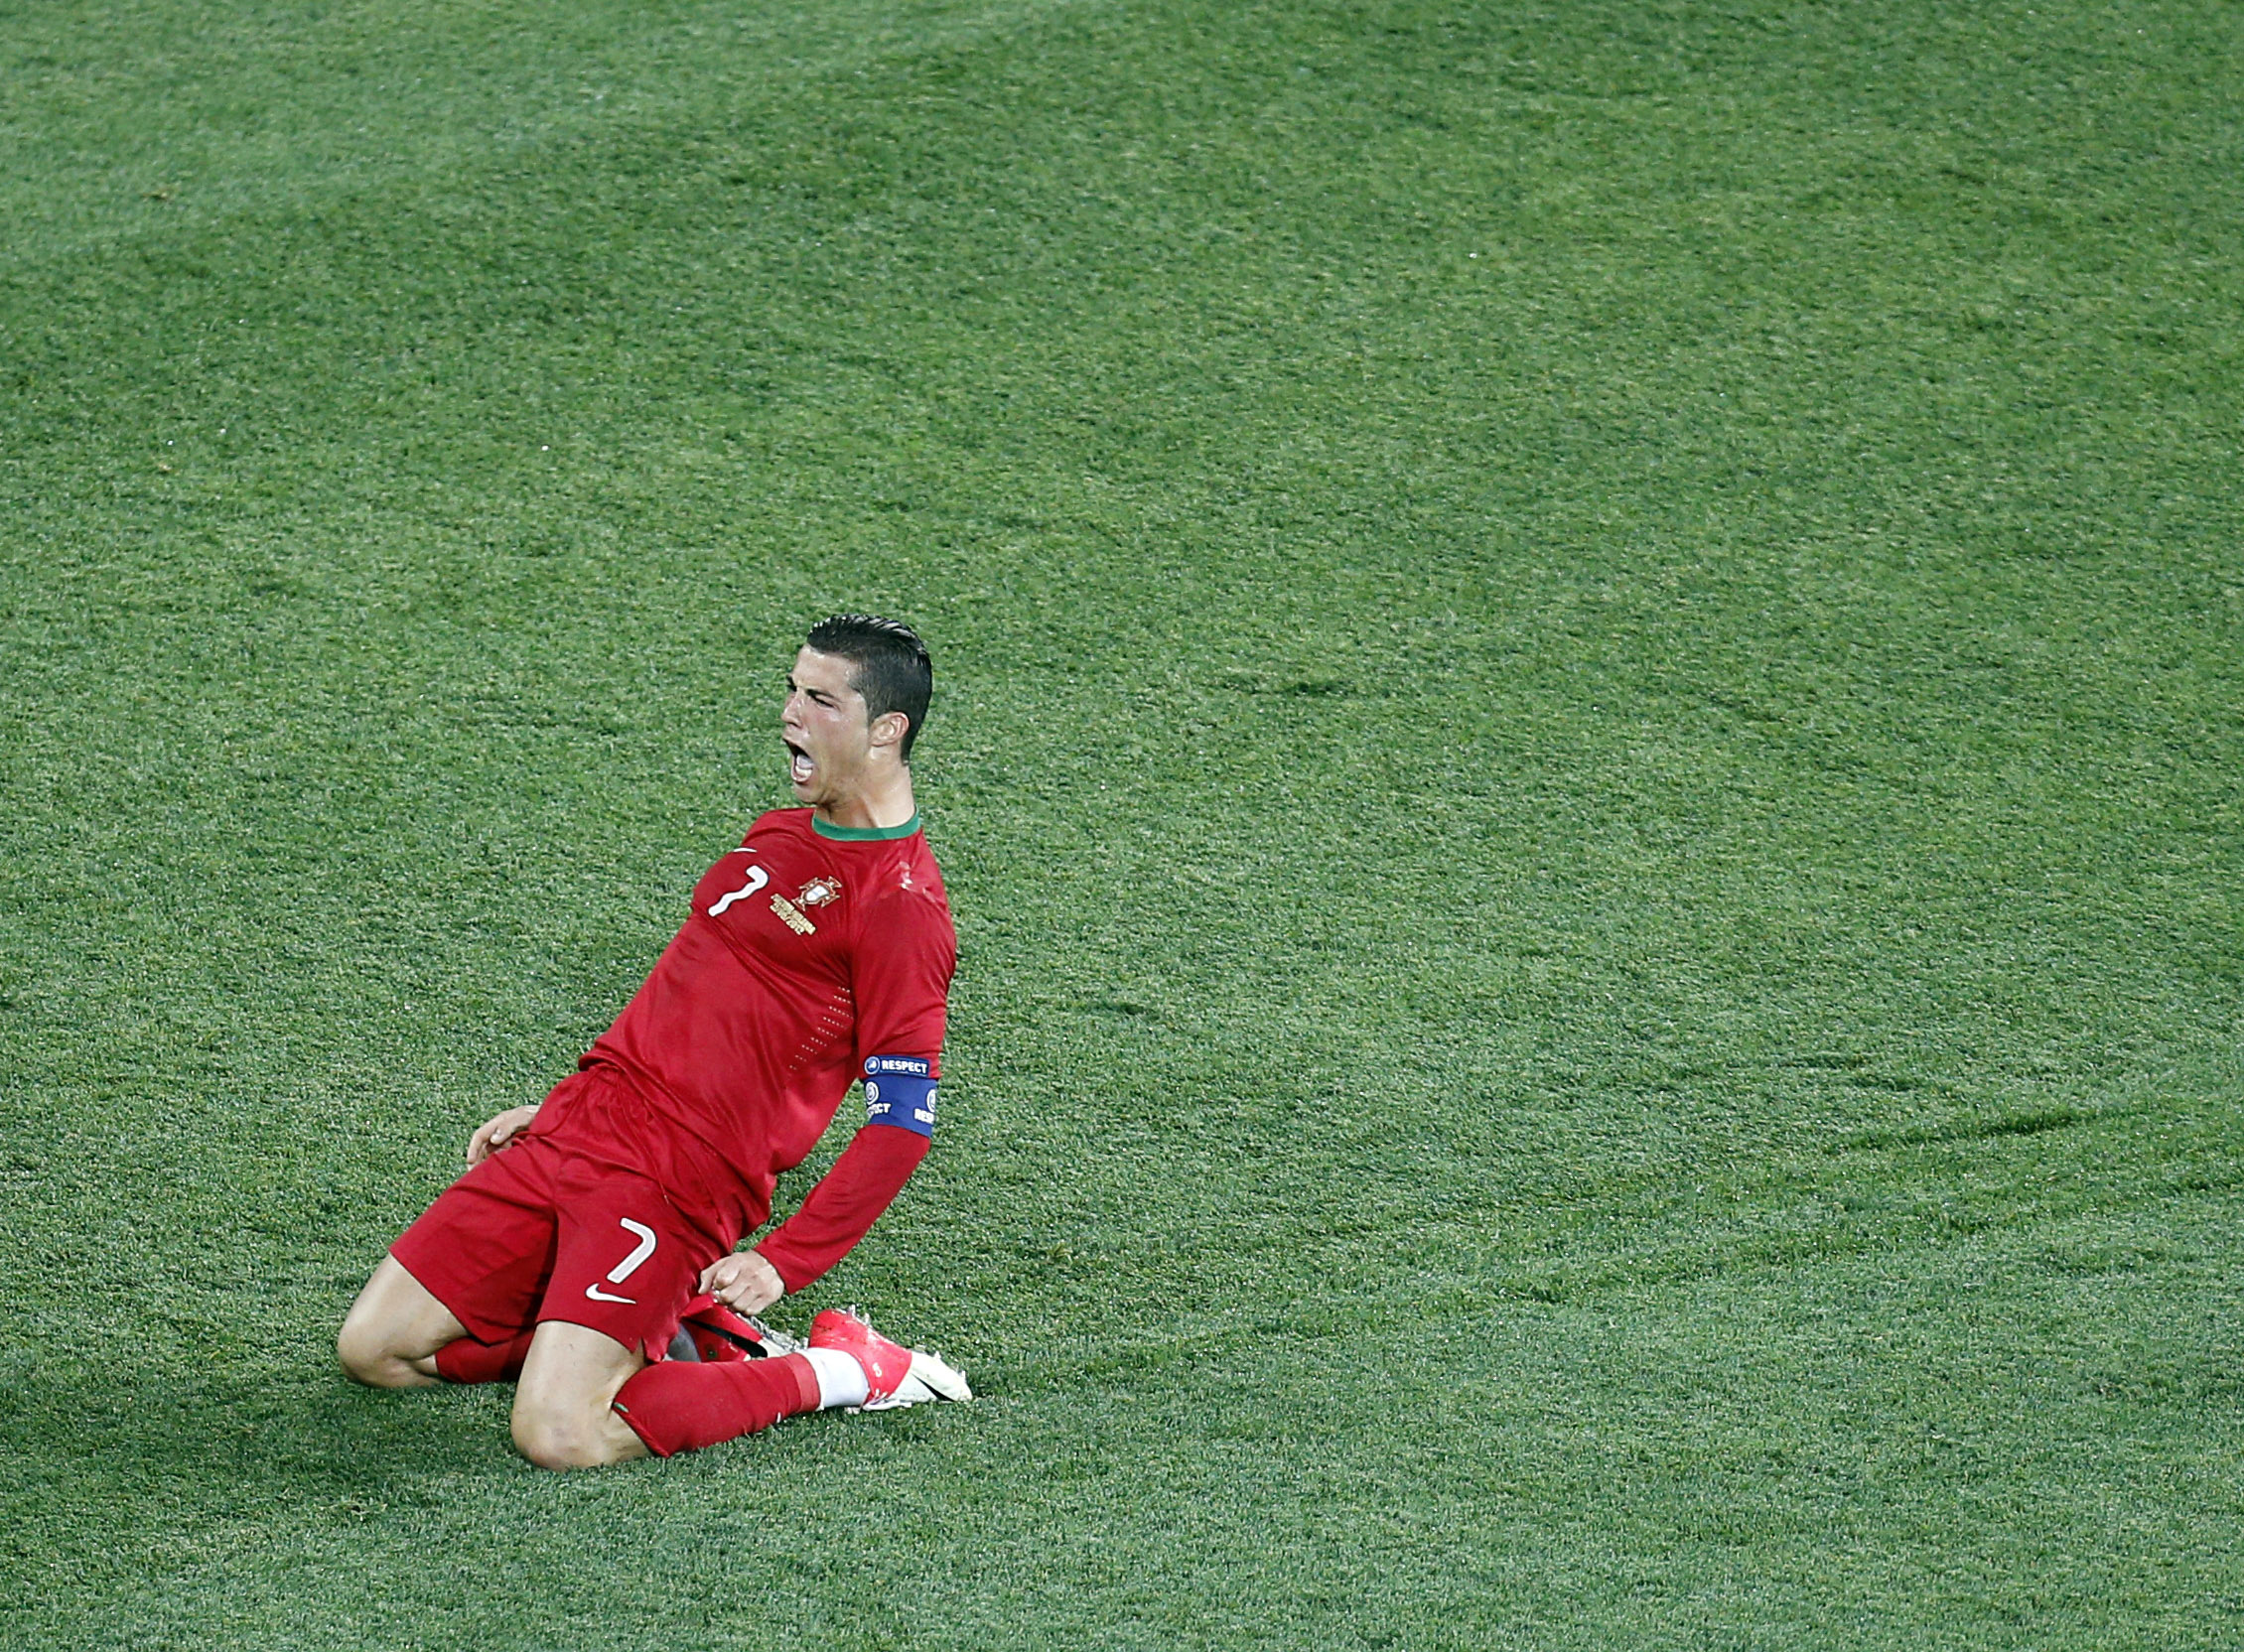 Cristiano Ronaldo gjorde två mål mot Holland i den sista gruppspelsmatchen och går in med stort självförtroende inför kvällens kvartsfinal mellan Portugal och Tjeckien.